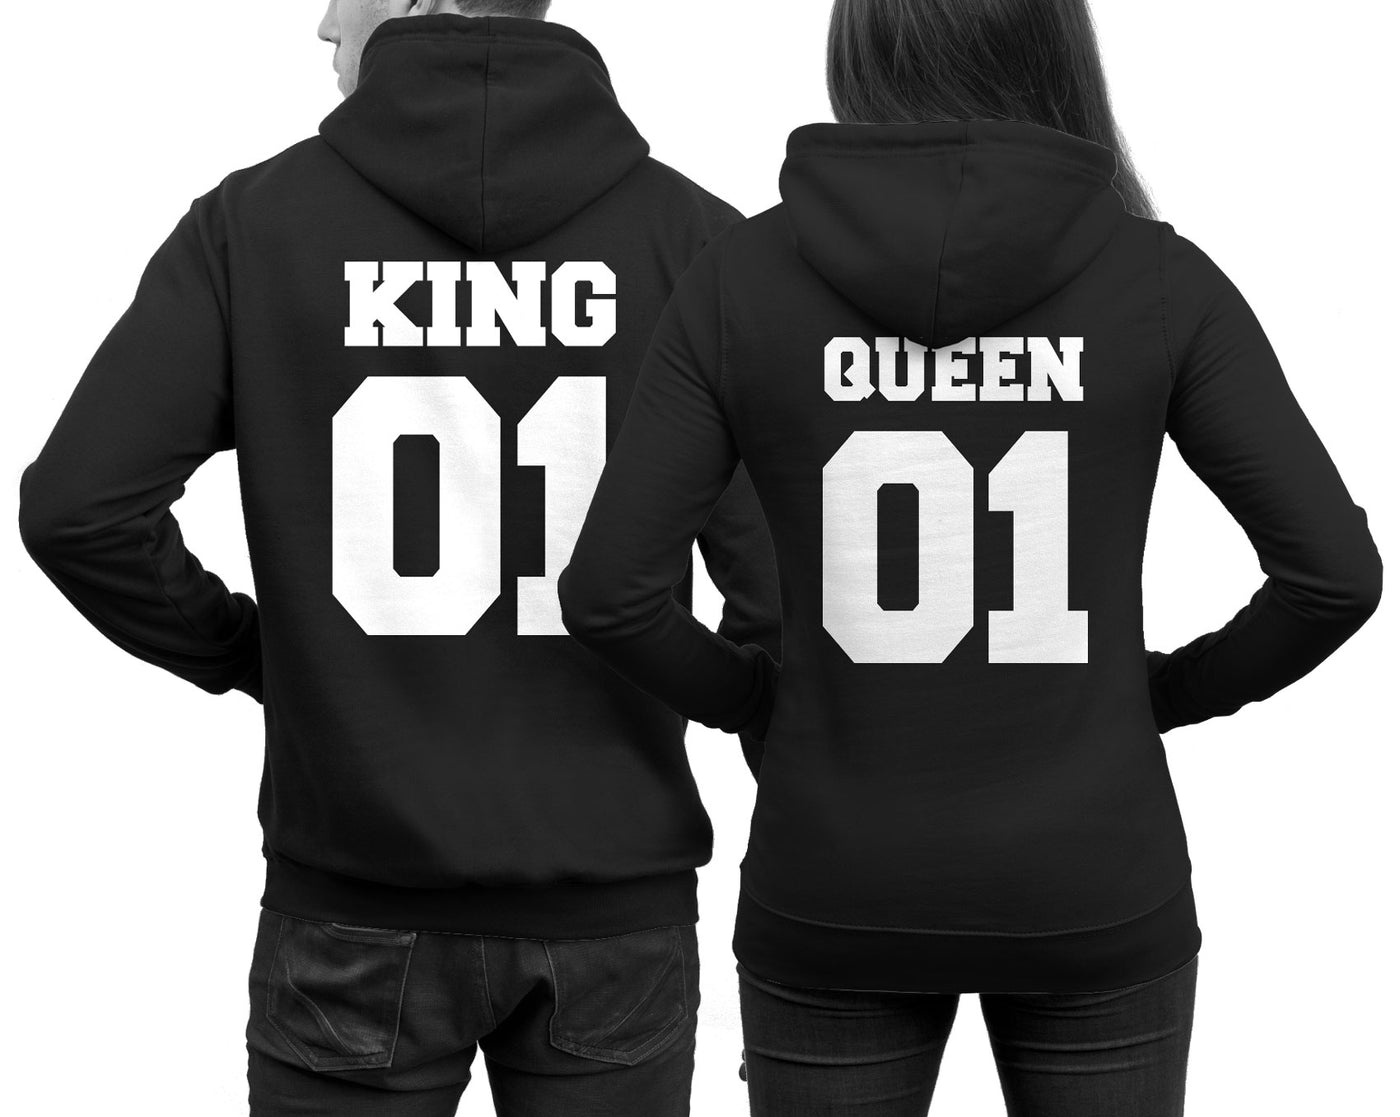 king-queen-hoodies-blk-ft51multi